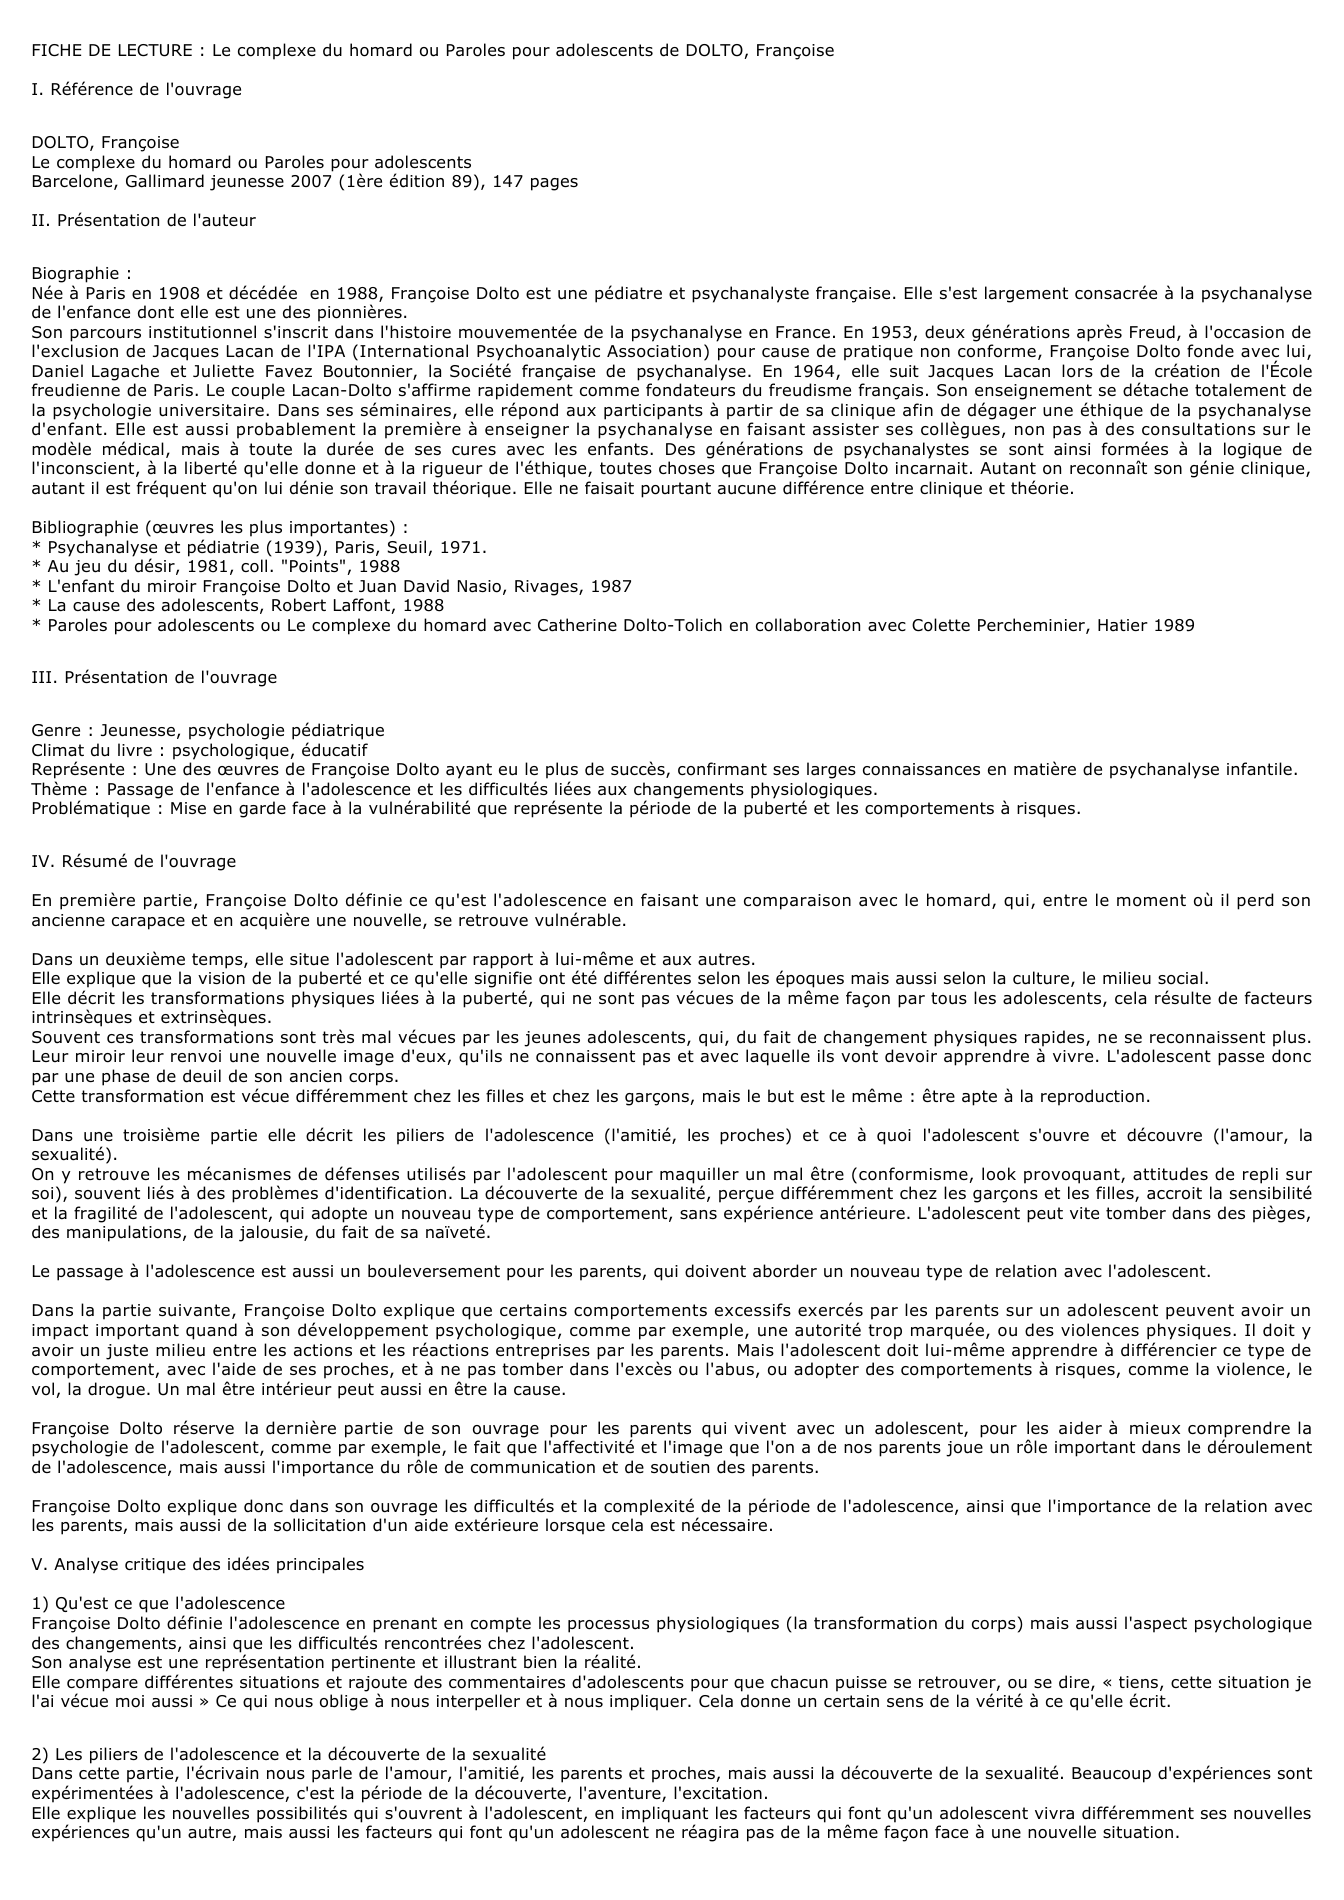 Prévisualisation du document FICHE DE LECTURE : Le complexe du homard ou Paroles pour adolescents de DOLTO, Françoise